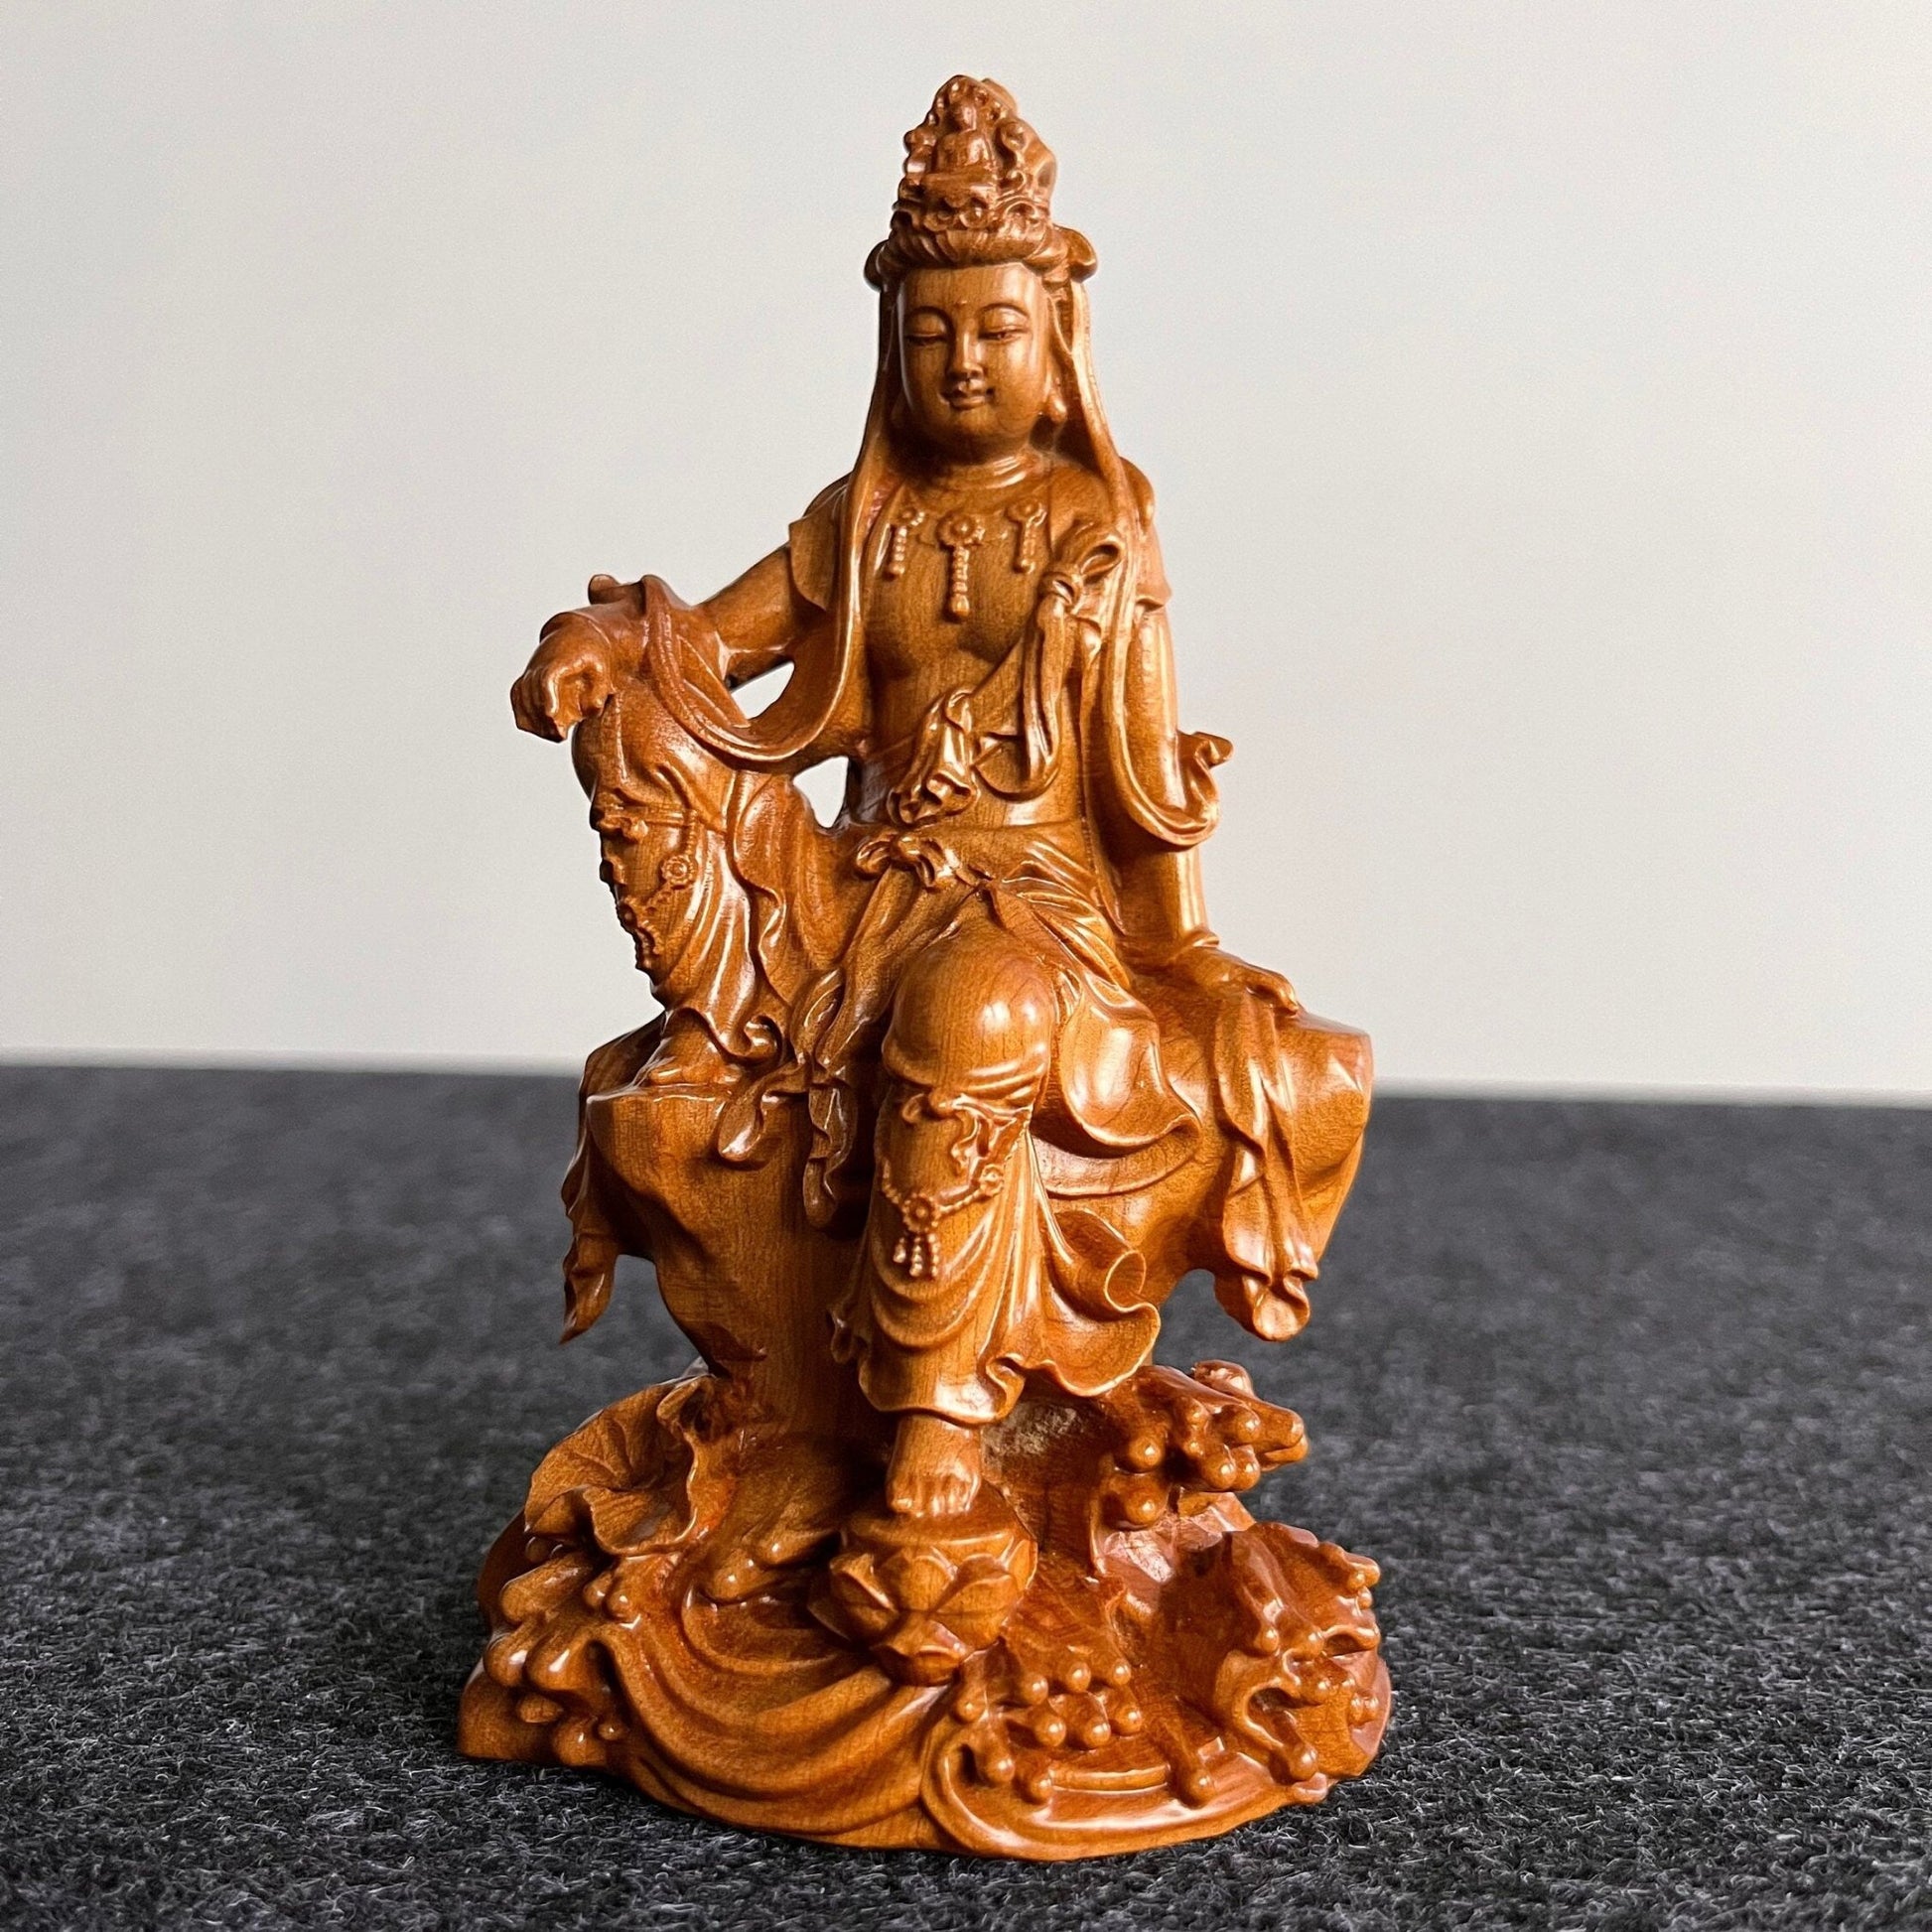 Small Wooden Guan Yin Statue, Handmade Resting Relaxing Kuan YinPremiumWoodArt